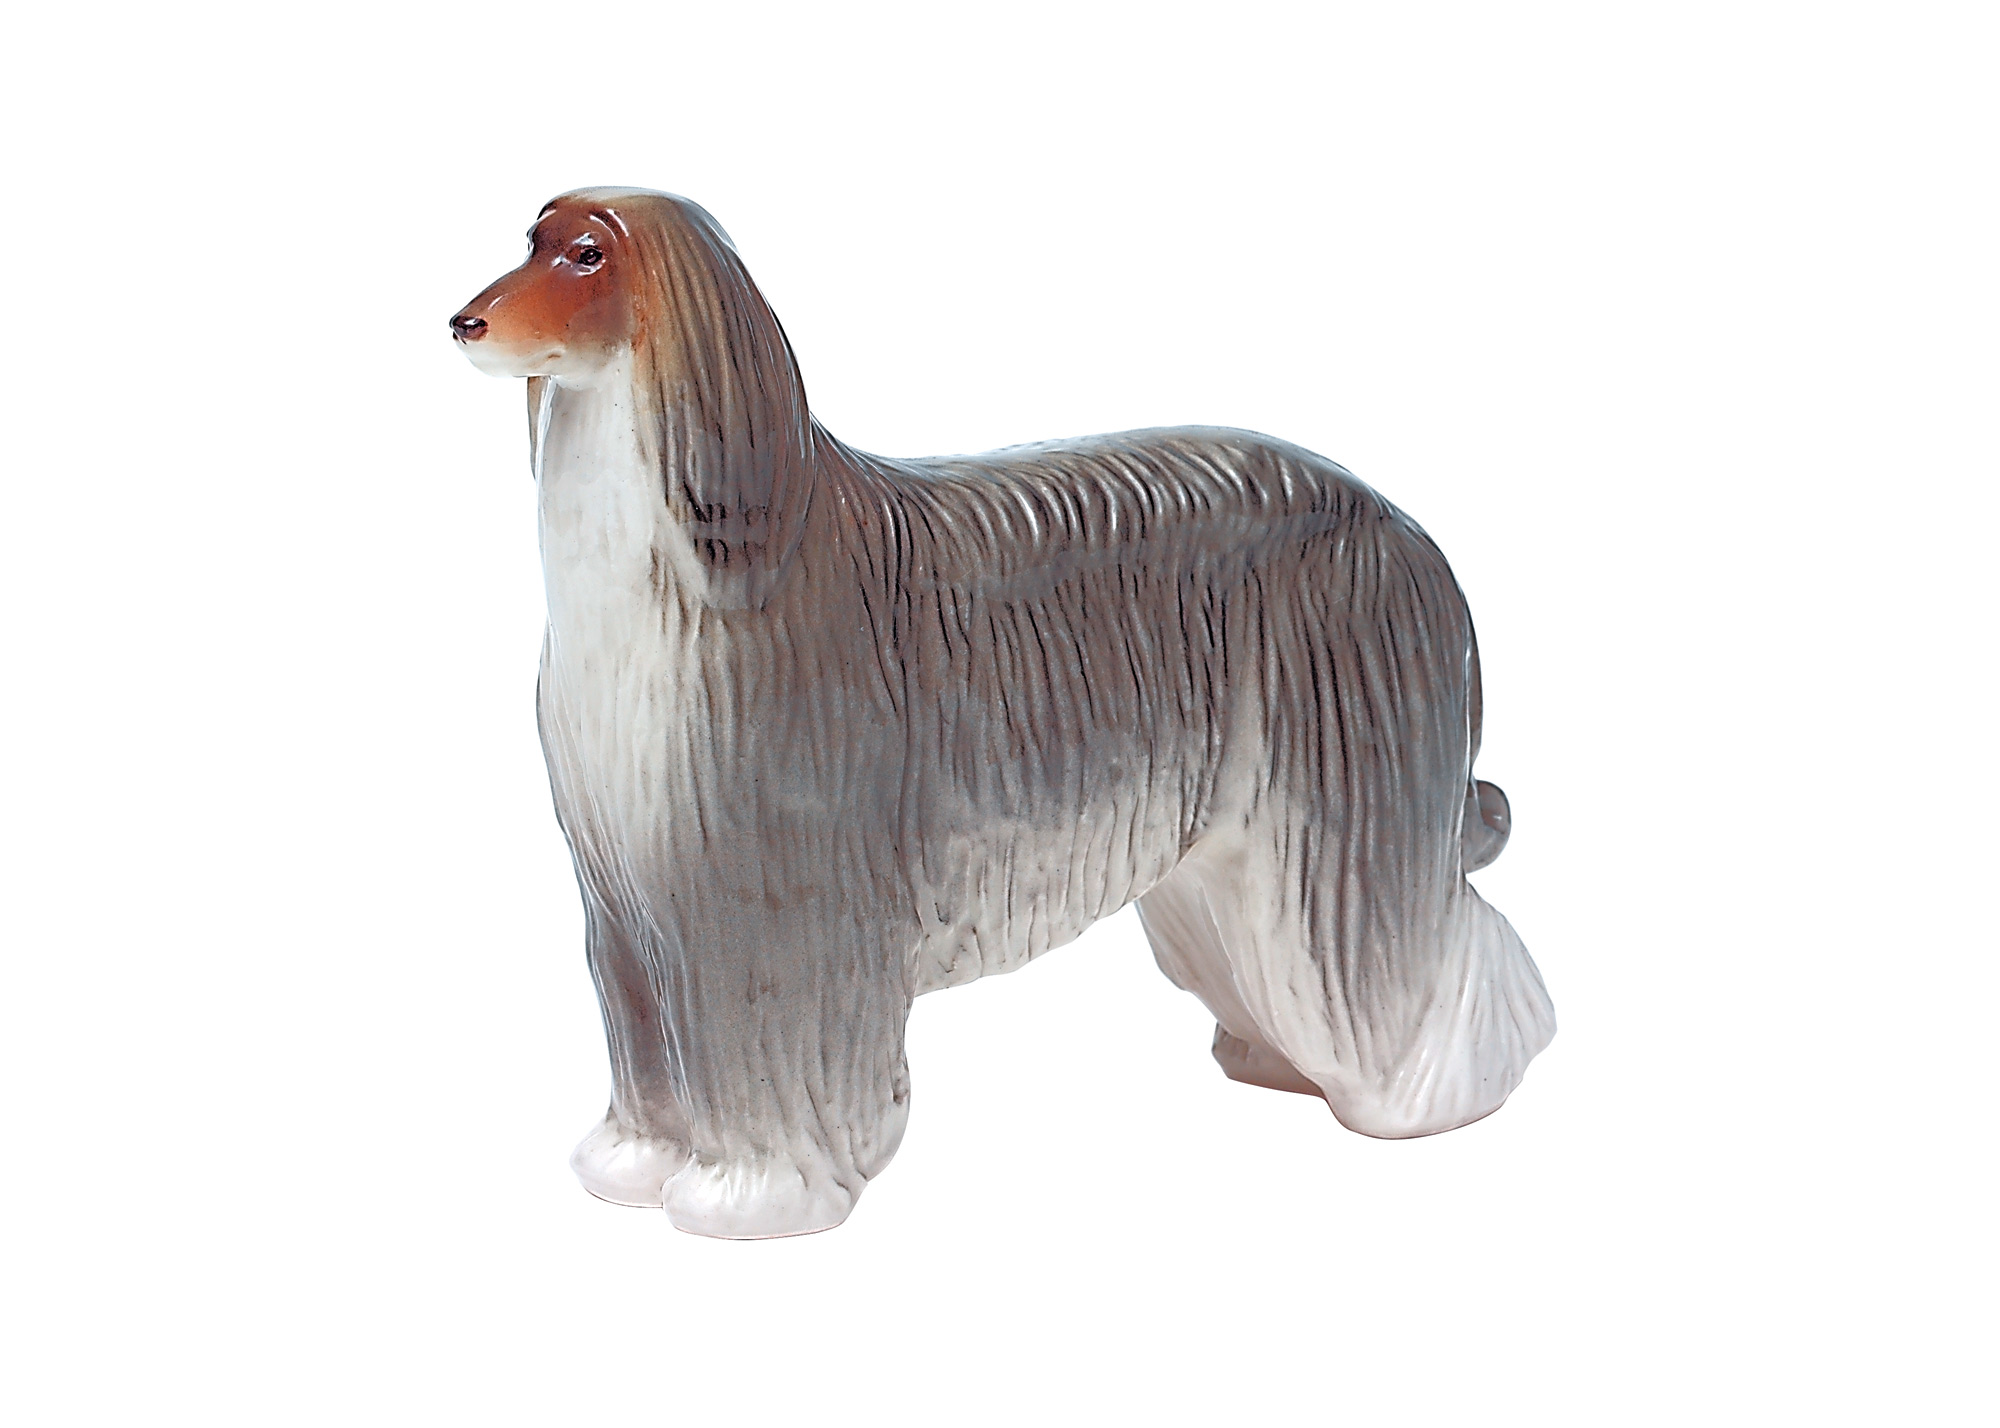 Buy Blue Afghan Hound Porcelain Figurine at GoldenCockerel.com